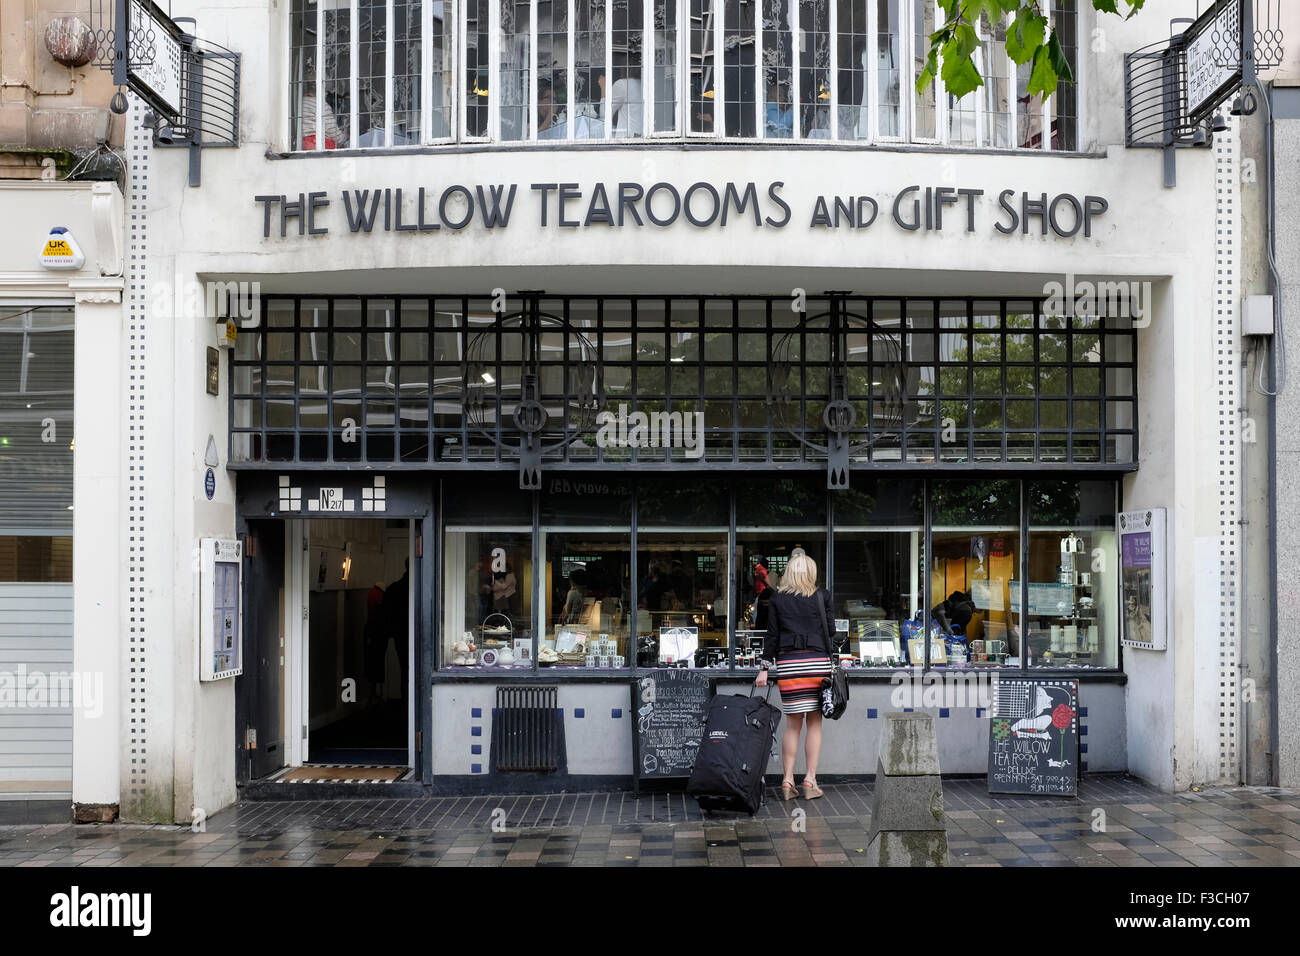 L'extérieur du célèbre Willow Tearooms (avant changement de nom après refurb) conçu par Charles Rennie Macintosh sur Sauchiehall Street à Glasgow en Écosse Banque D'Images